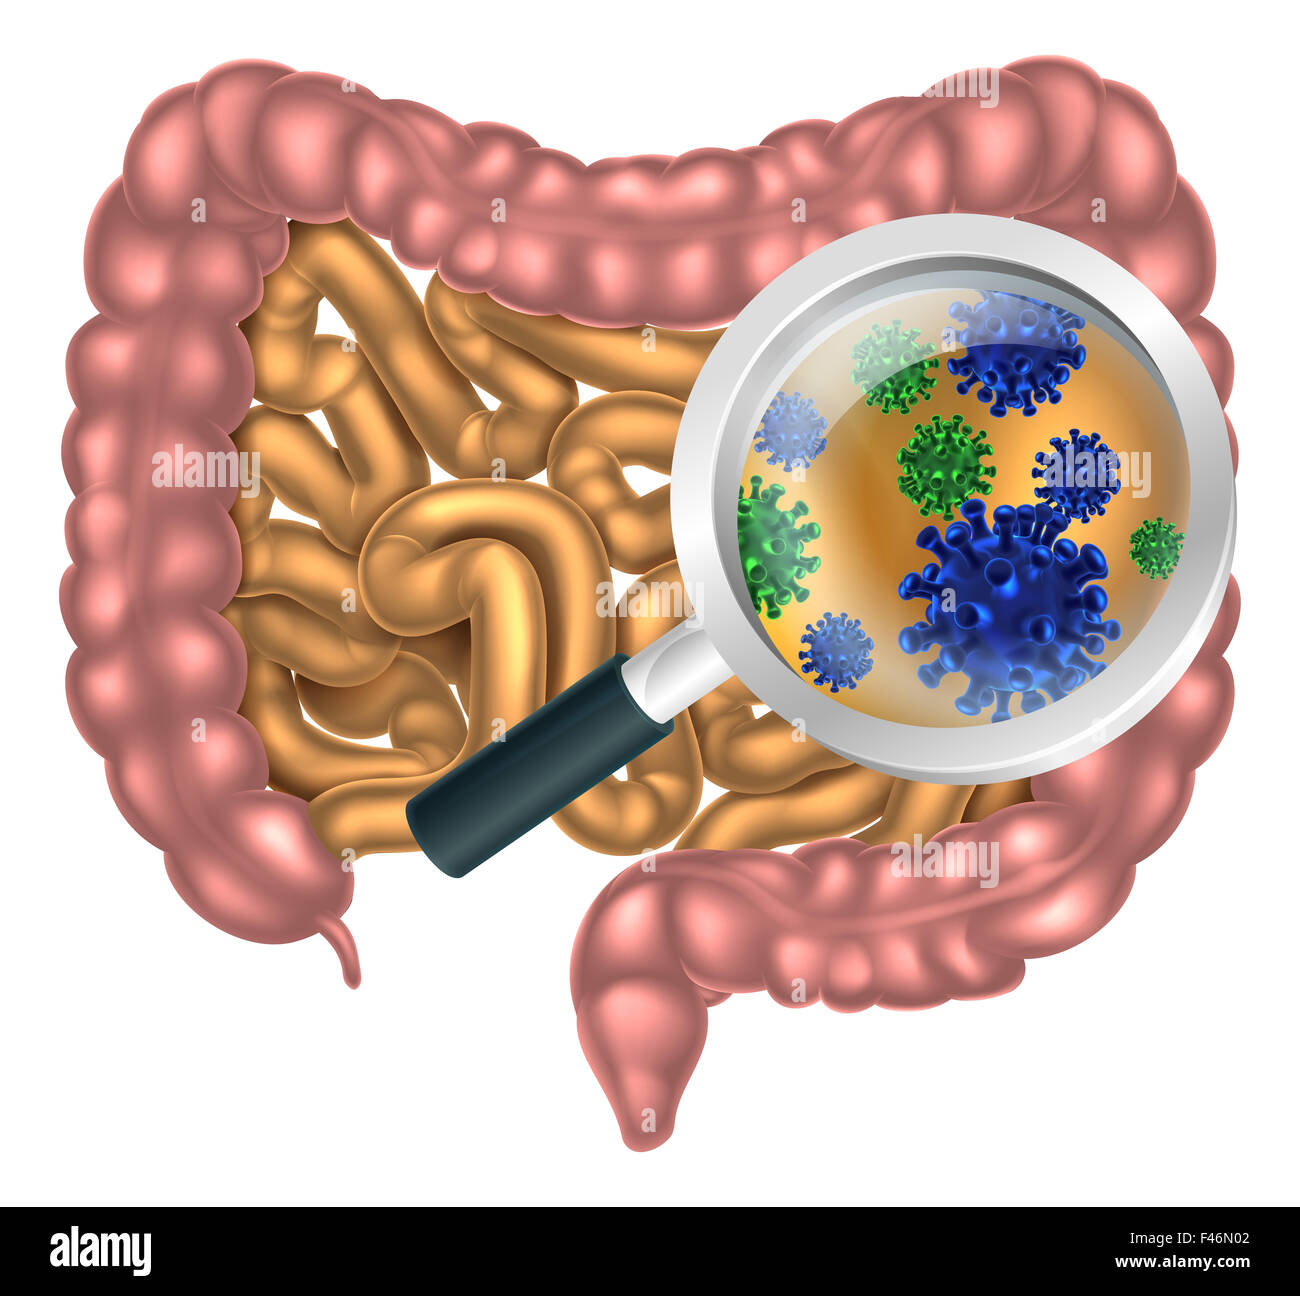 Lente di ingrandimento focalizzata sull'apparato digestivo umano, il tubo digerente o il canale alimentare che mostra i batteri o i virus delle cellule. Cou Foto Stock